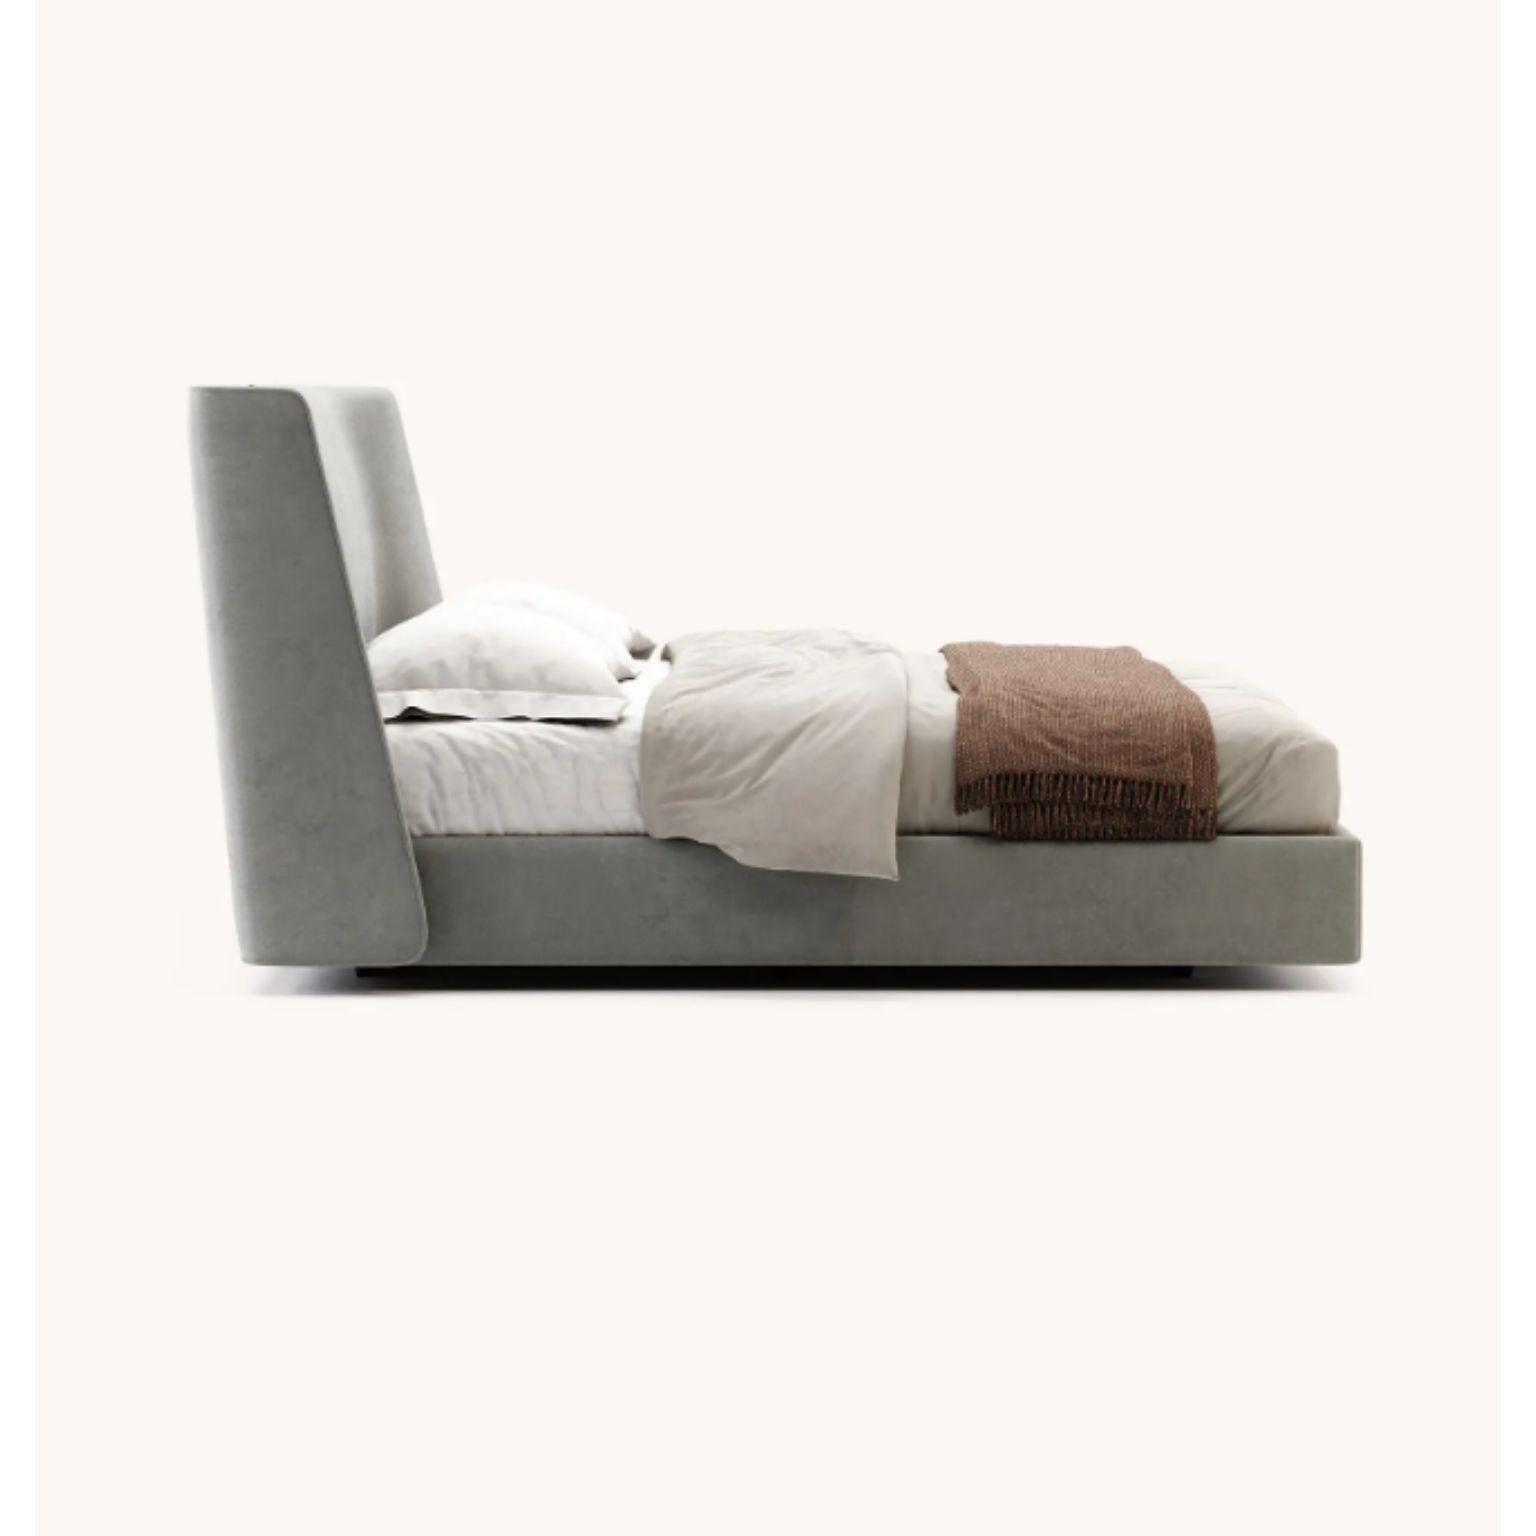 Post-Modern Queen Size Echo Bed by Domkapa